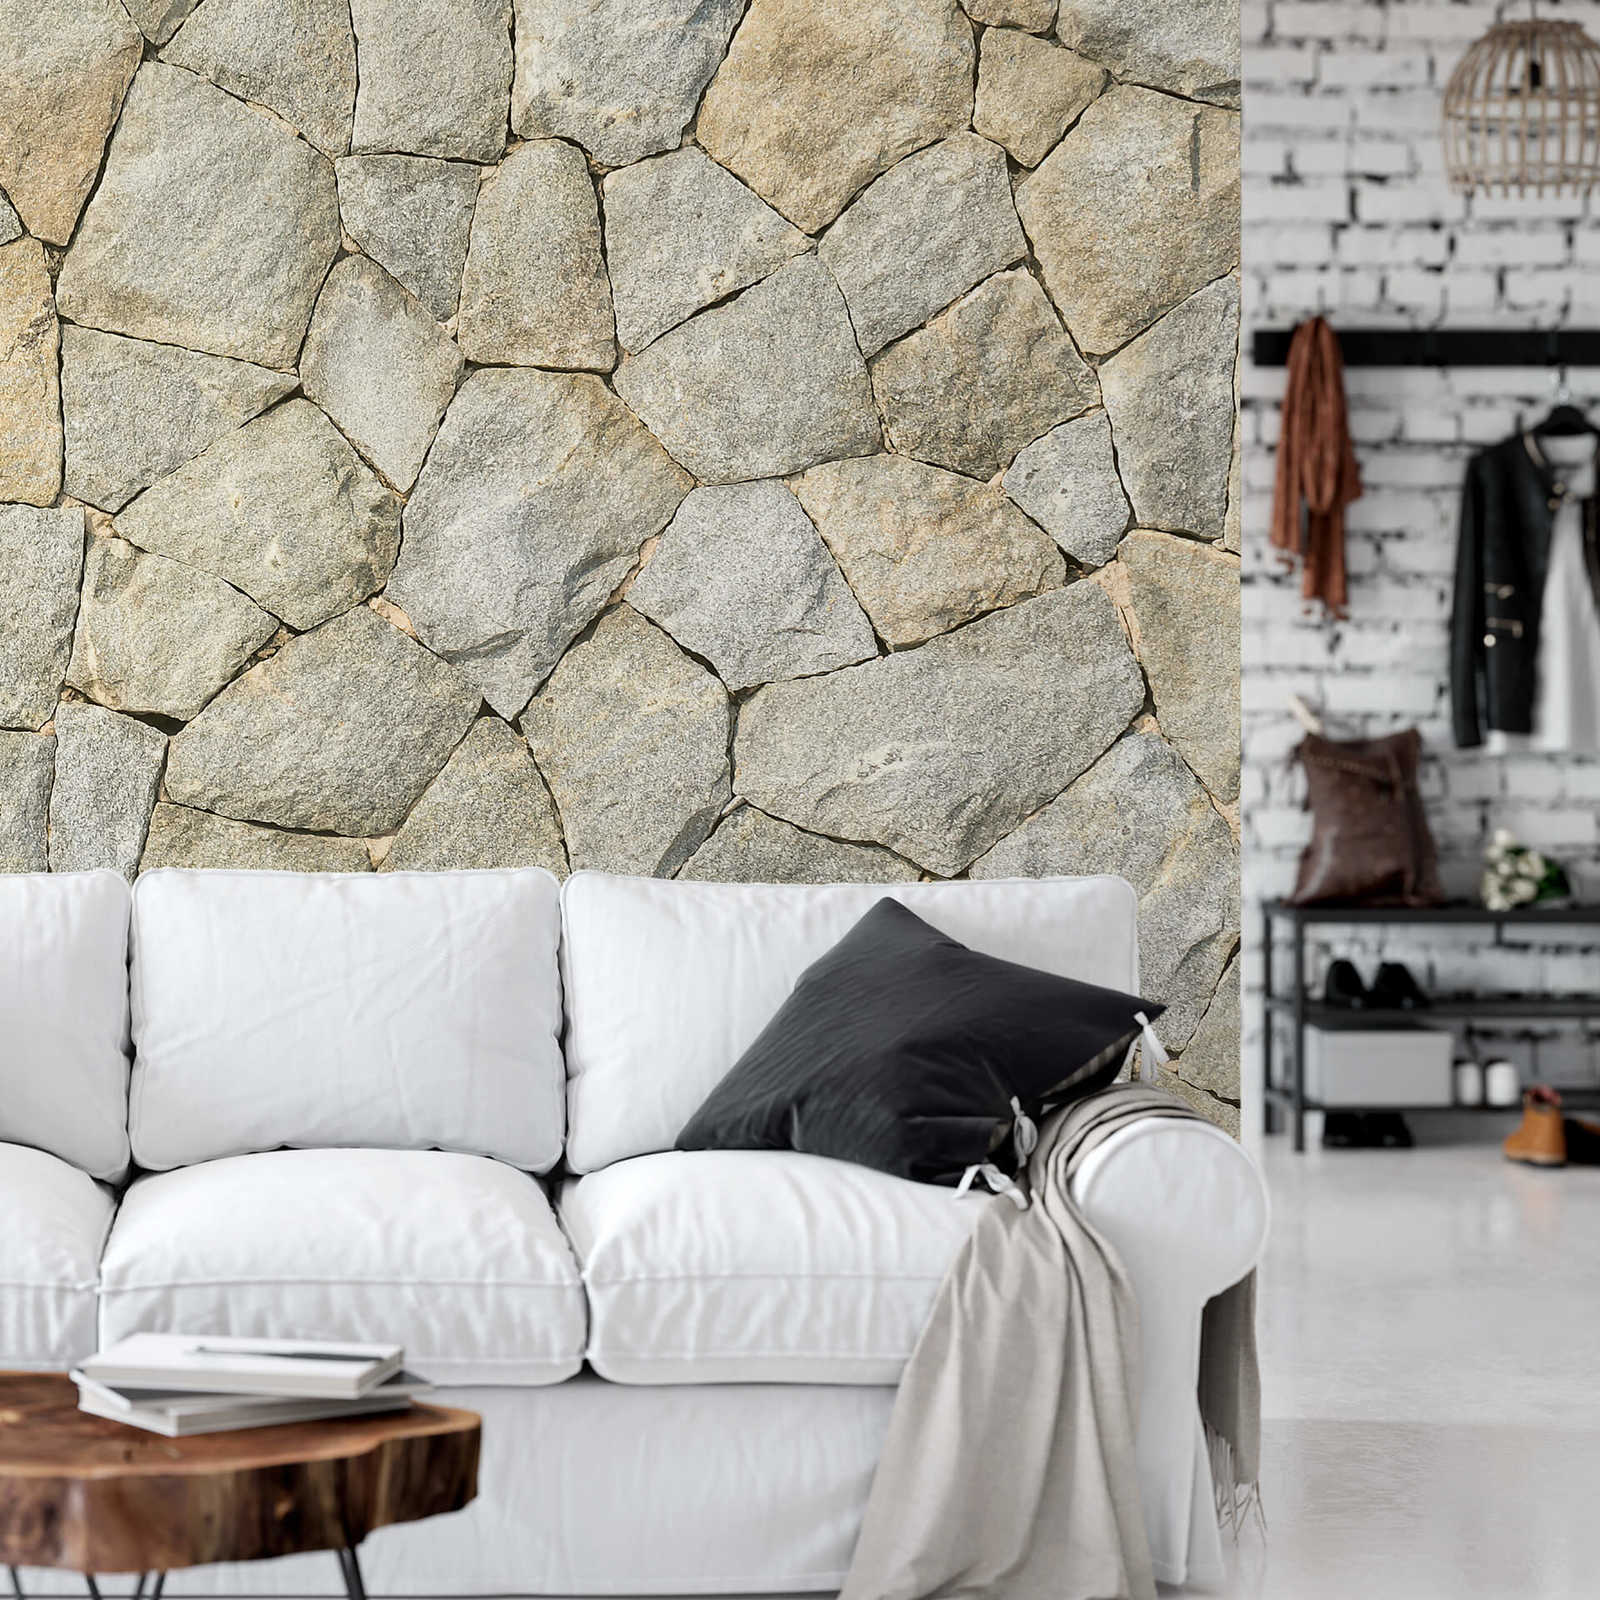             Papier peint 3D imitation pierre naturelle mur - gris
        